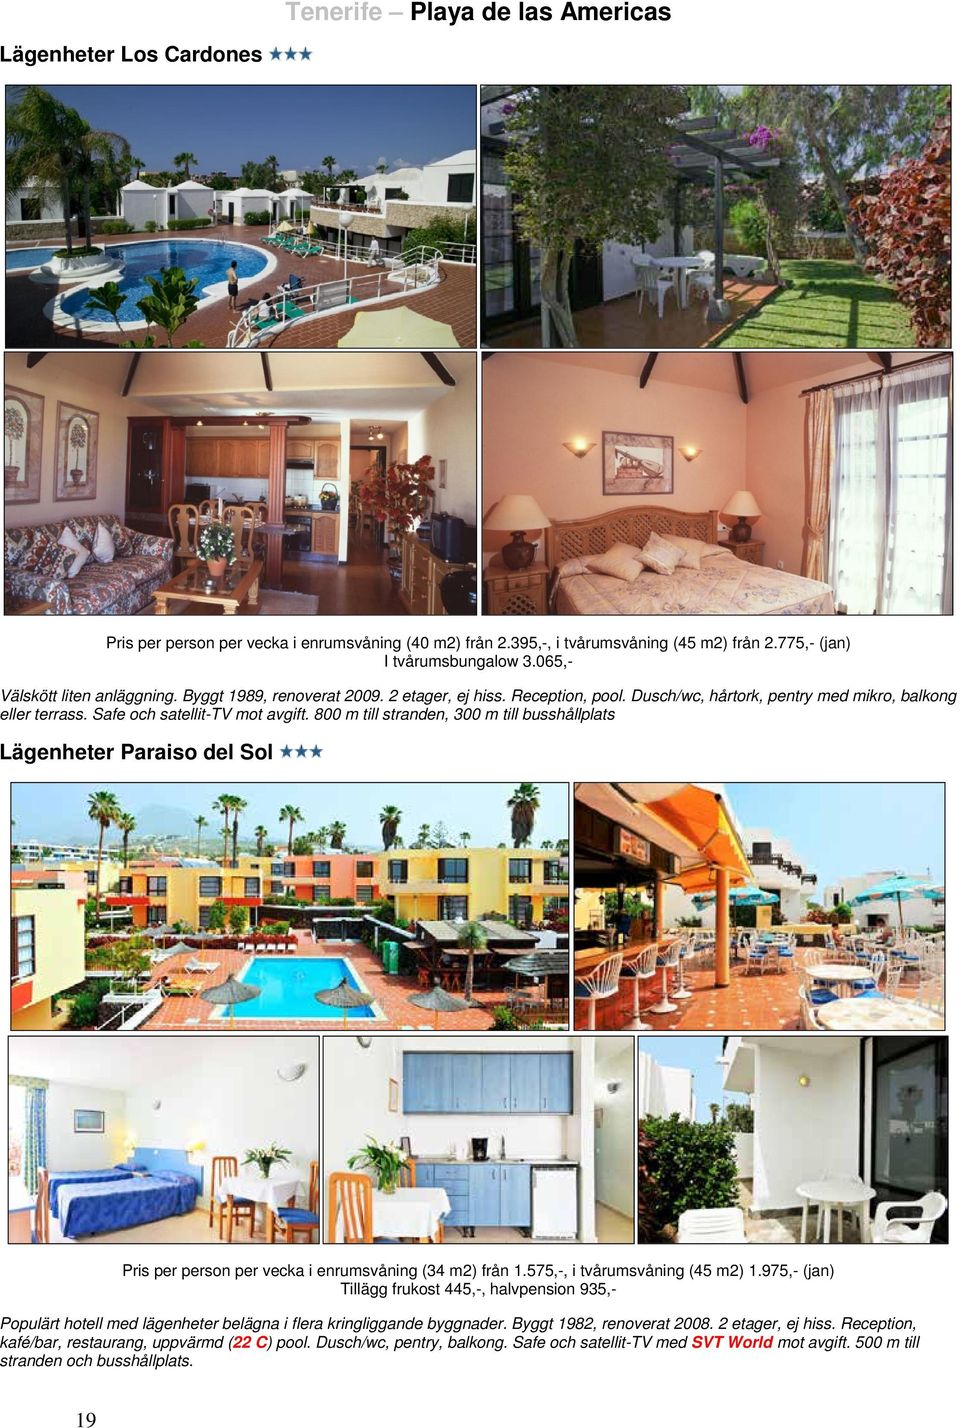 800 m till stranden, 300 m till busshållplats Lägenheter Paraiso del Sol Pris per person per vecka i enrumsvåning (34 m2) från 1.575,-, i tvårumsvåning (45 m2) 1.